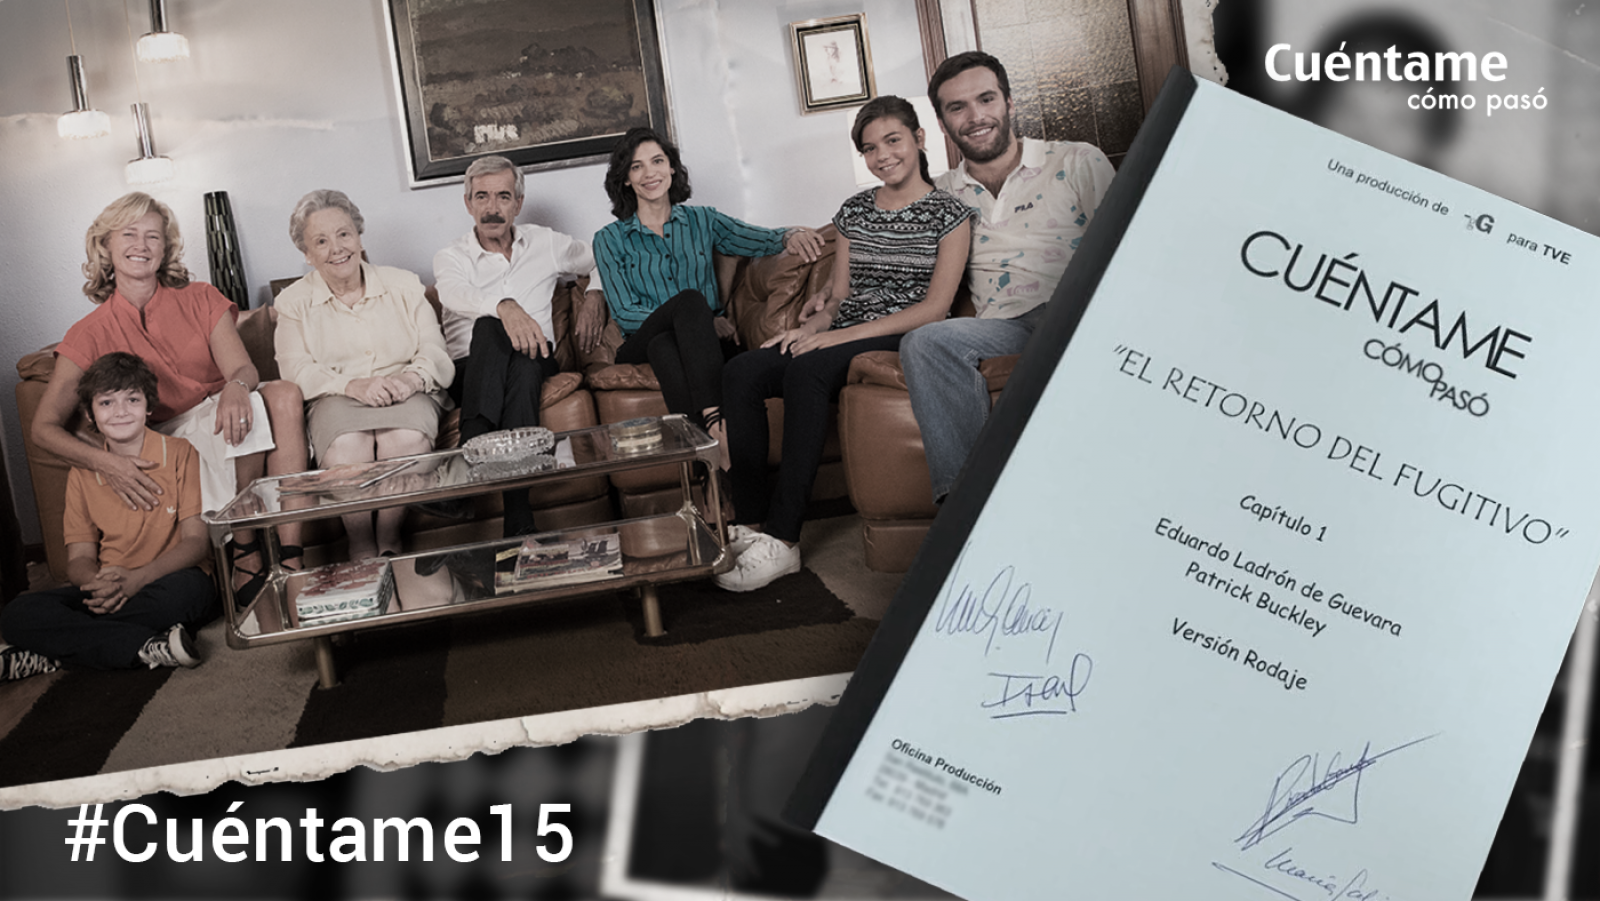 Participa en #Cuéntame15 y gana dos guiones firmados